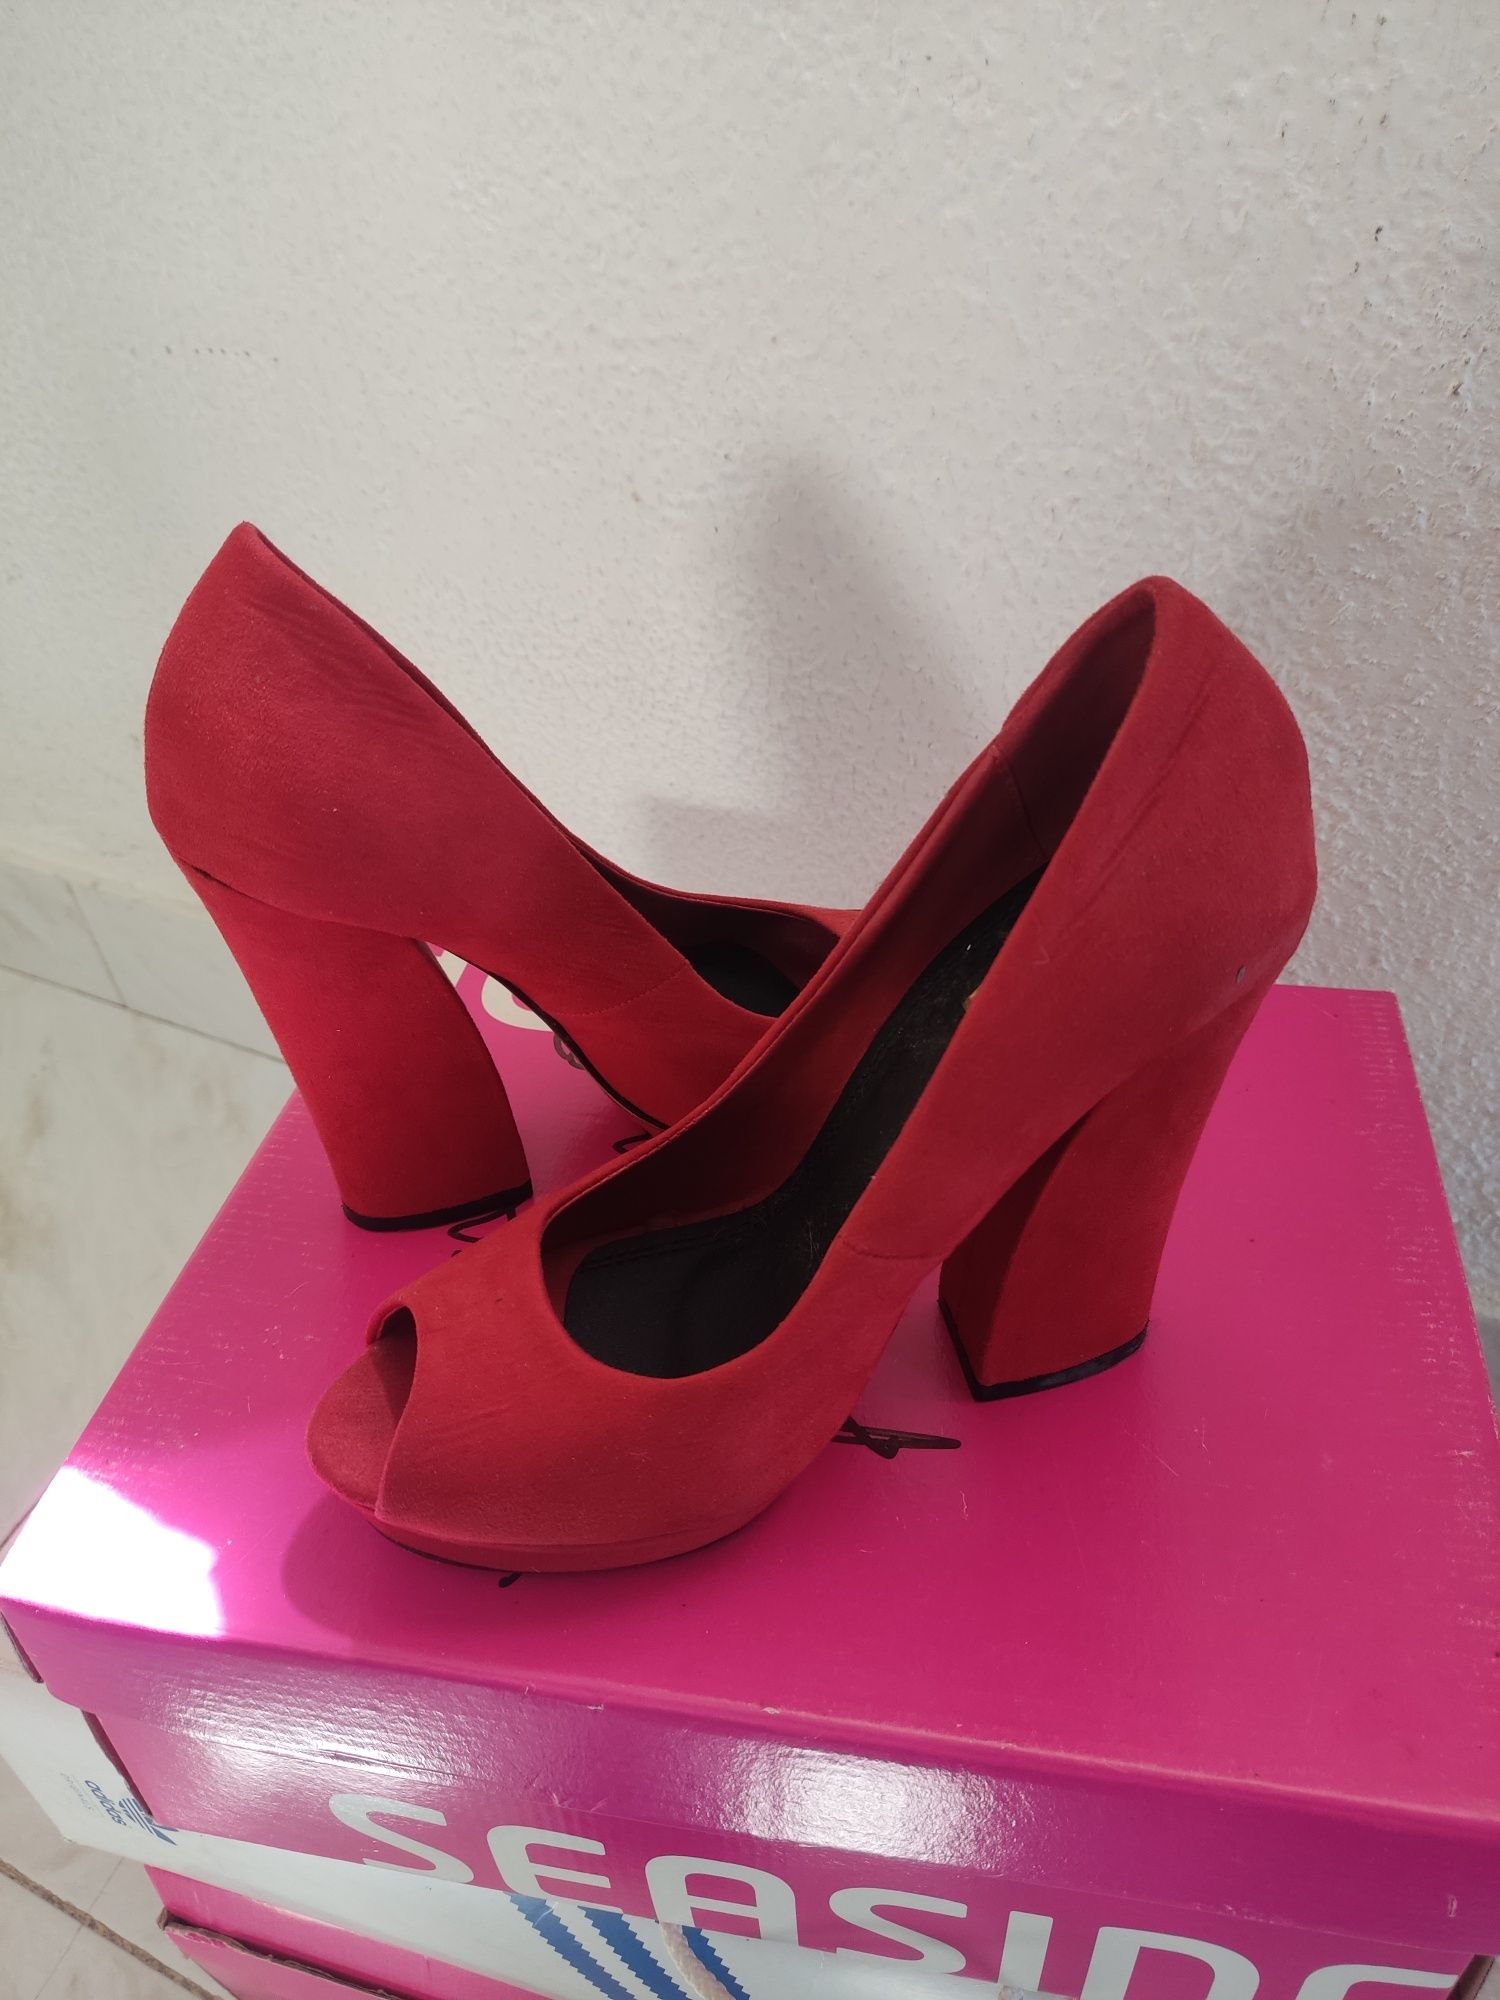 Sapatos vermelhos 38